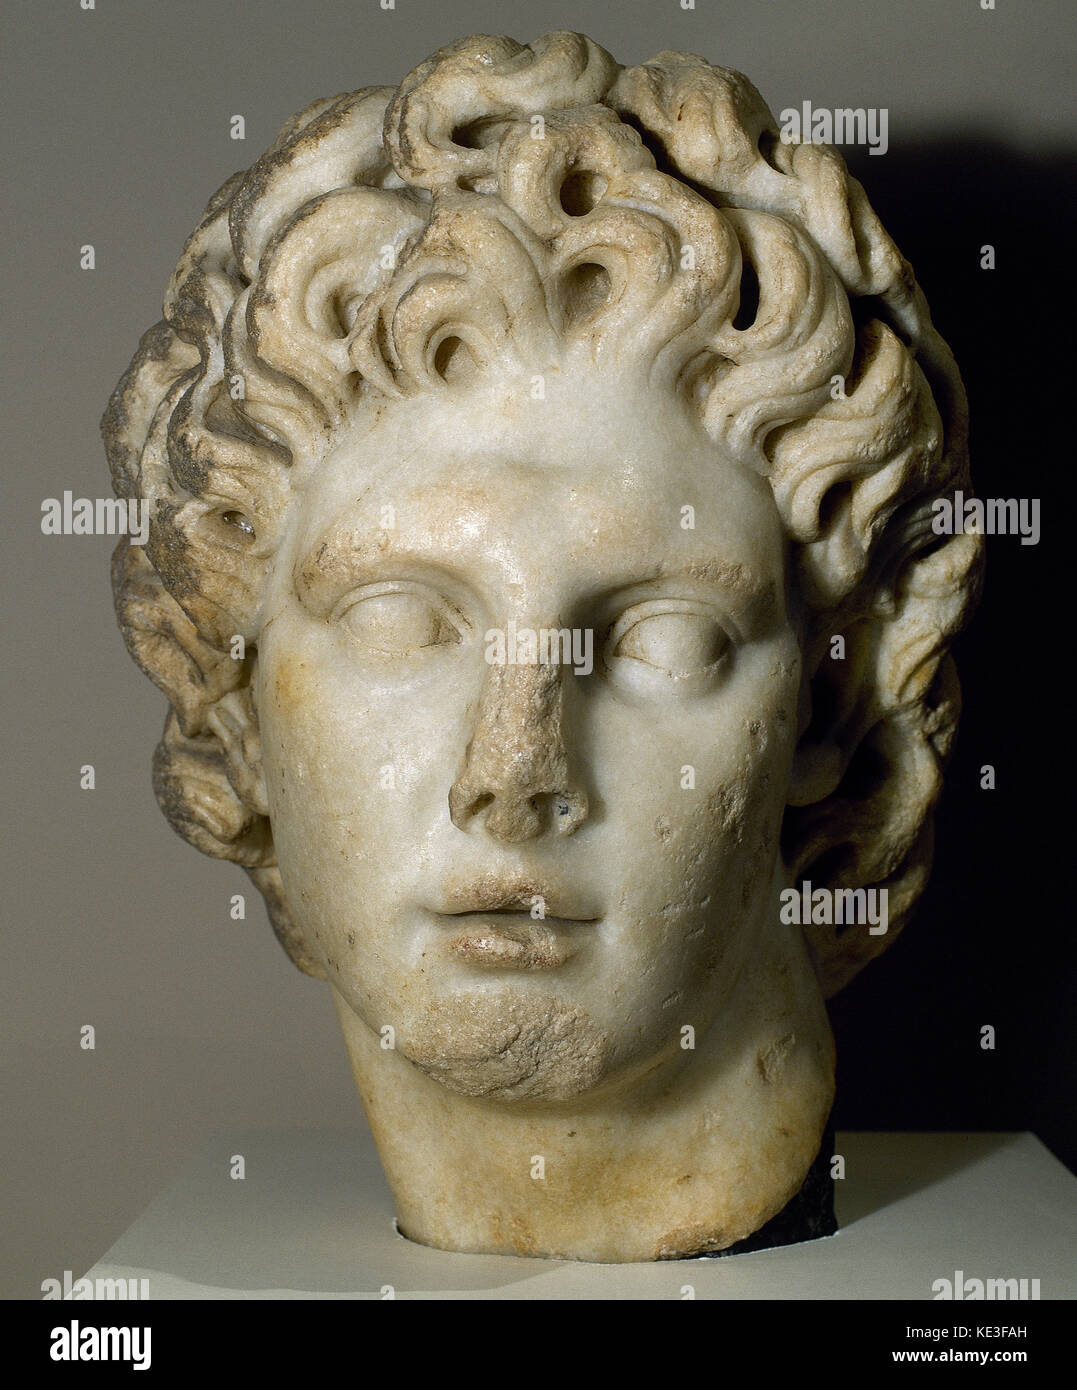 Alessandro il Grande re di macedon (356-323 a.C.). argead dynasty. Ii secolo d.c. busto. Museo archeologico di Siviglia Andalusia Spagna. Foto Stock